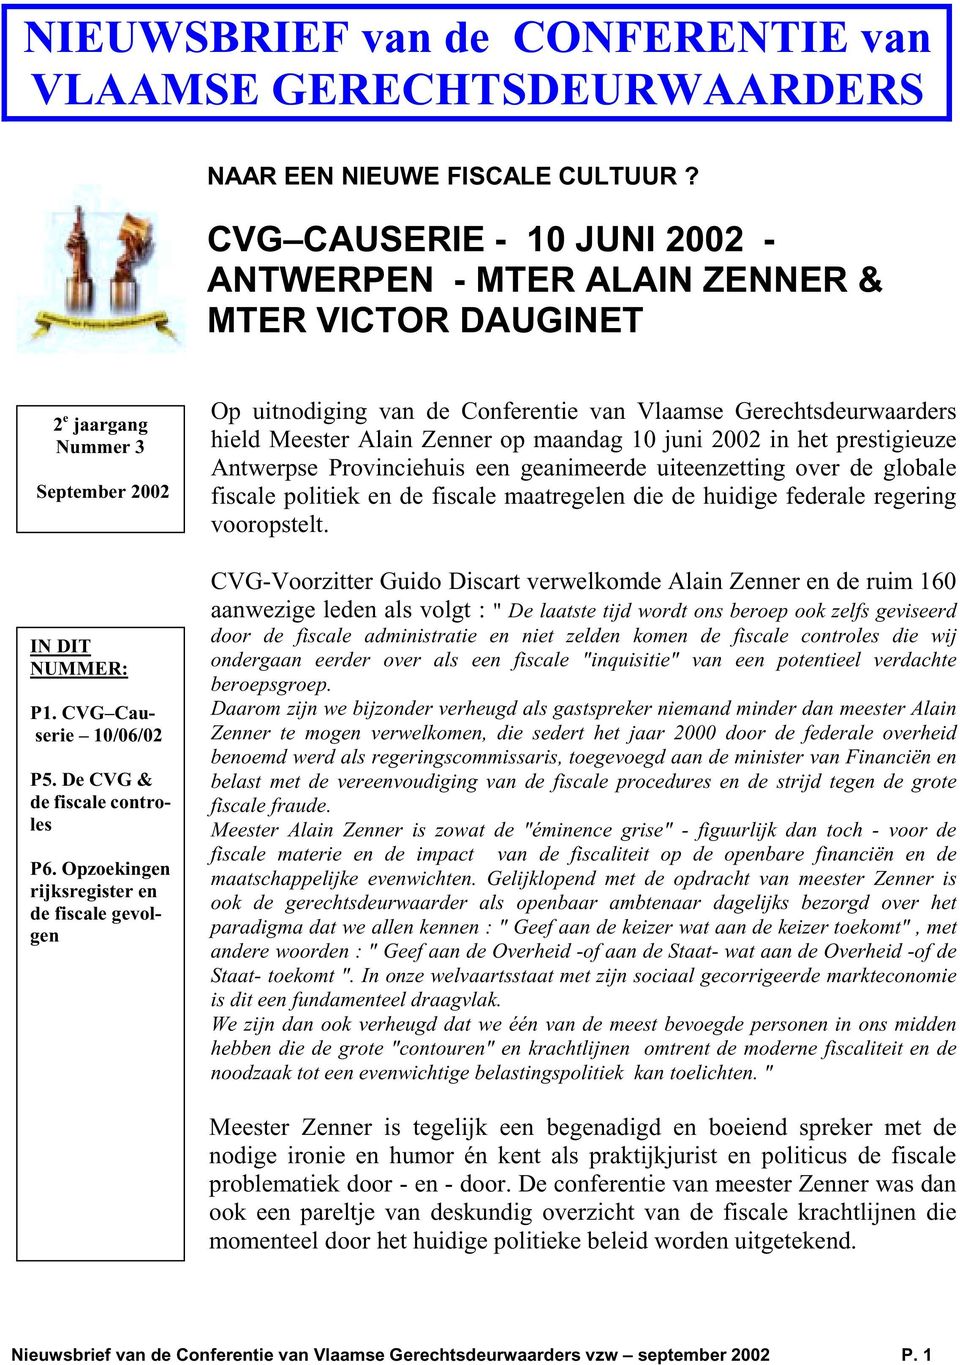 Opzoekingen rijksregister en de fiscale gevolgen Op uitnodiging van de Conferentie van Vlaamse Gerechtsdeurwaarders hield Meester Alain Zenner op maandag 10 juni 2002 in het prestigieuze Antwerpse